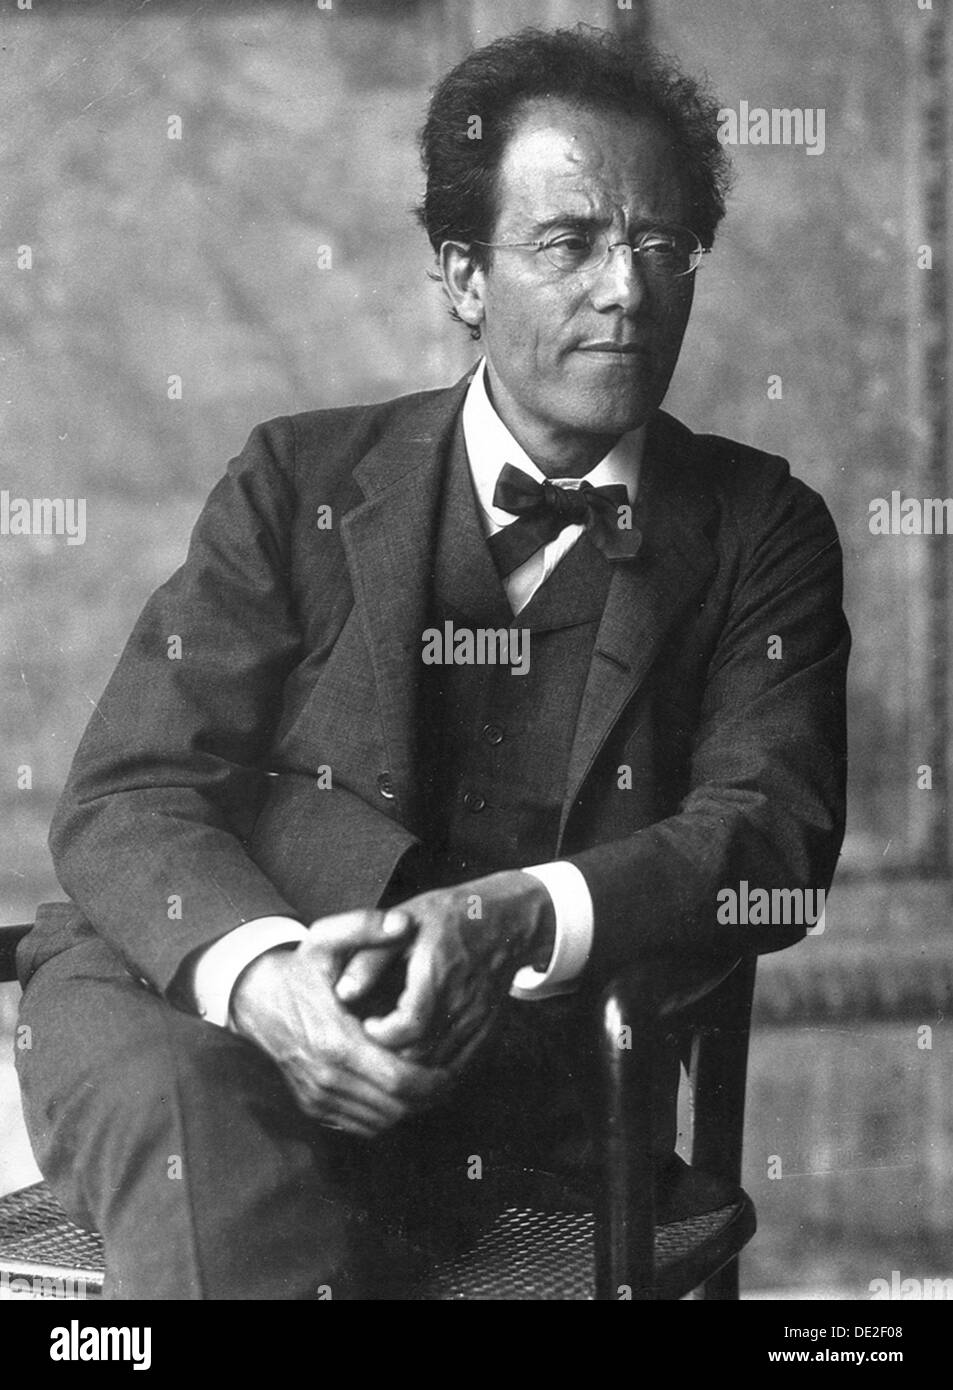 Gustav Mahler, compositeur et chef d'orchestre autrichien, des années 1900. Artiste : Inconnu Banque D'Images